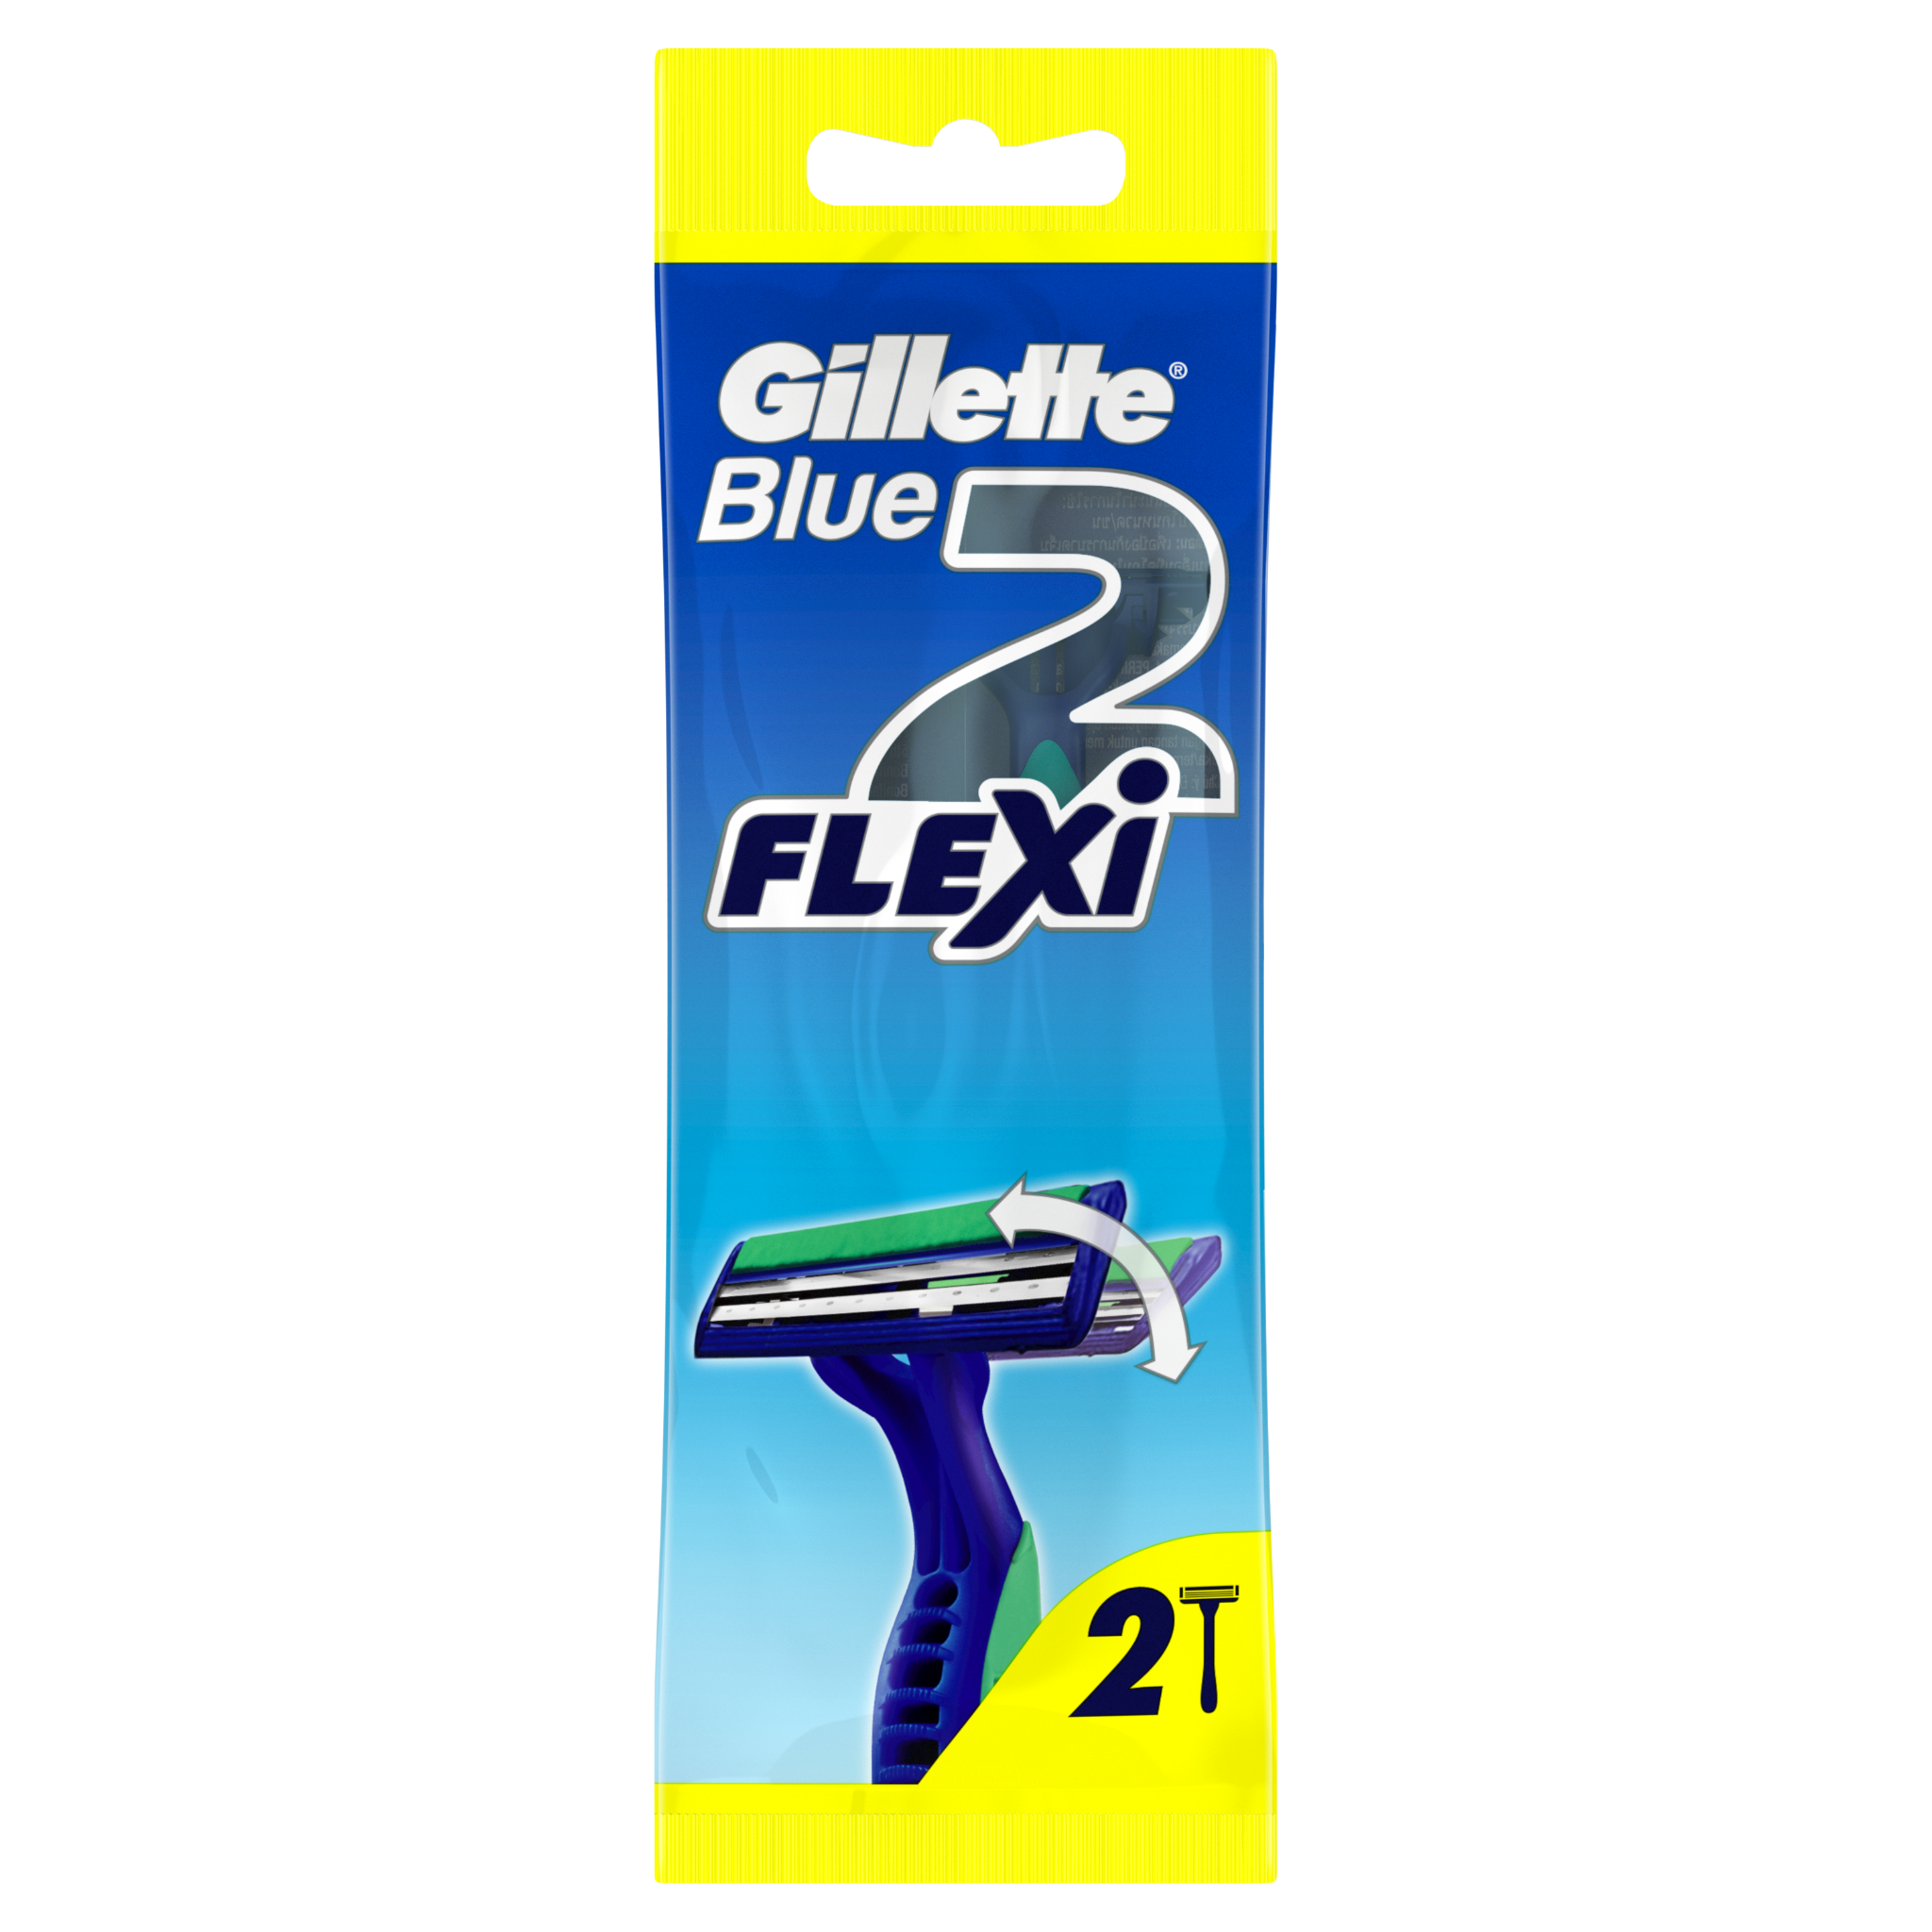  Dao Cạo Râu Gillette Blue Plus II Pivot (Vỉ 2 Cây) 